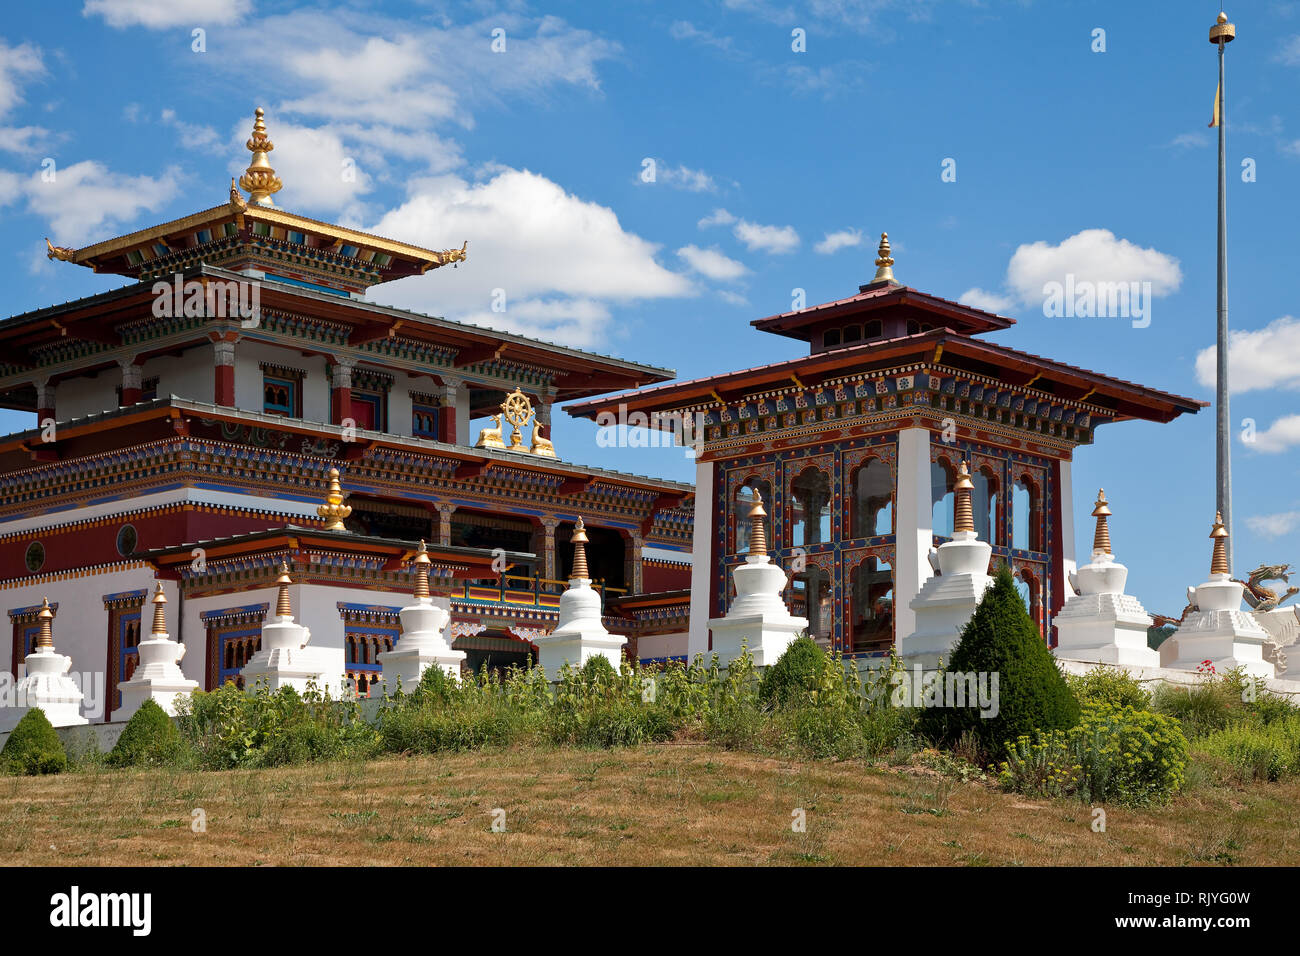 La Boulaye, TEMPEL DER 1000 Budda, gegründet 1987 von Mönchen tibetischen. Lamaistisches Zentrum verbunden mit einer Hochschule für Tibetologie, LIN Foto Stock